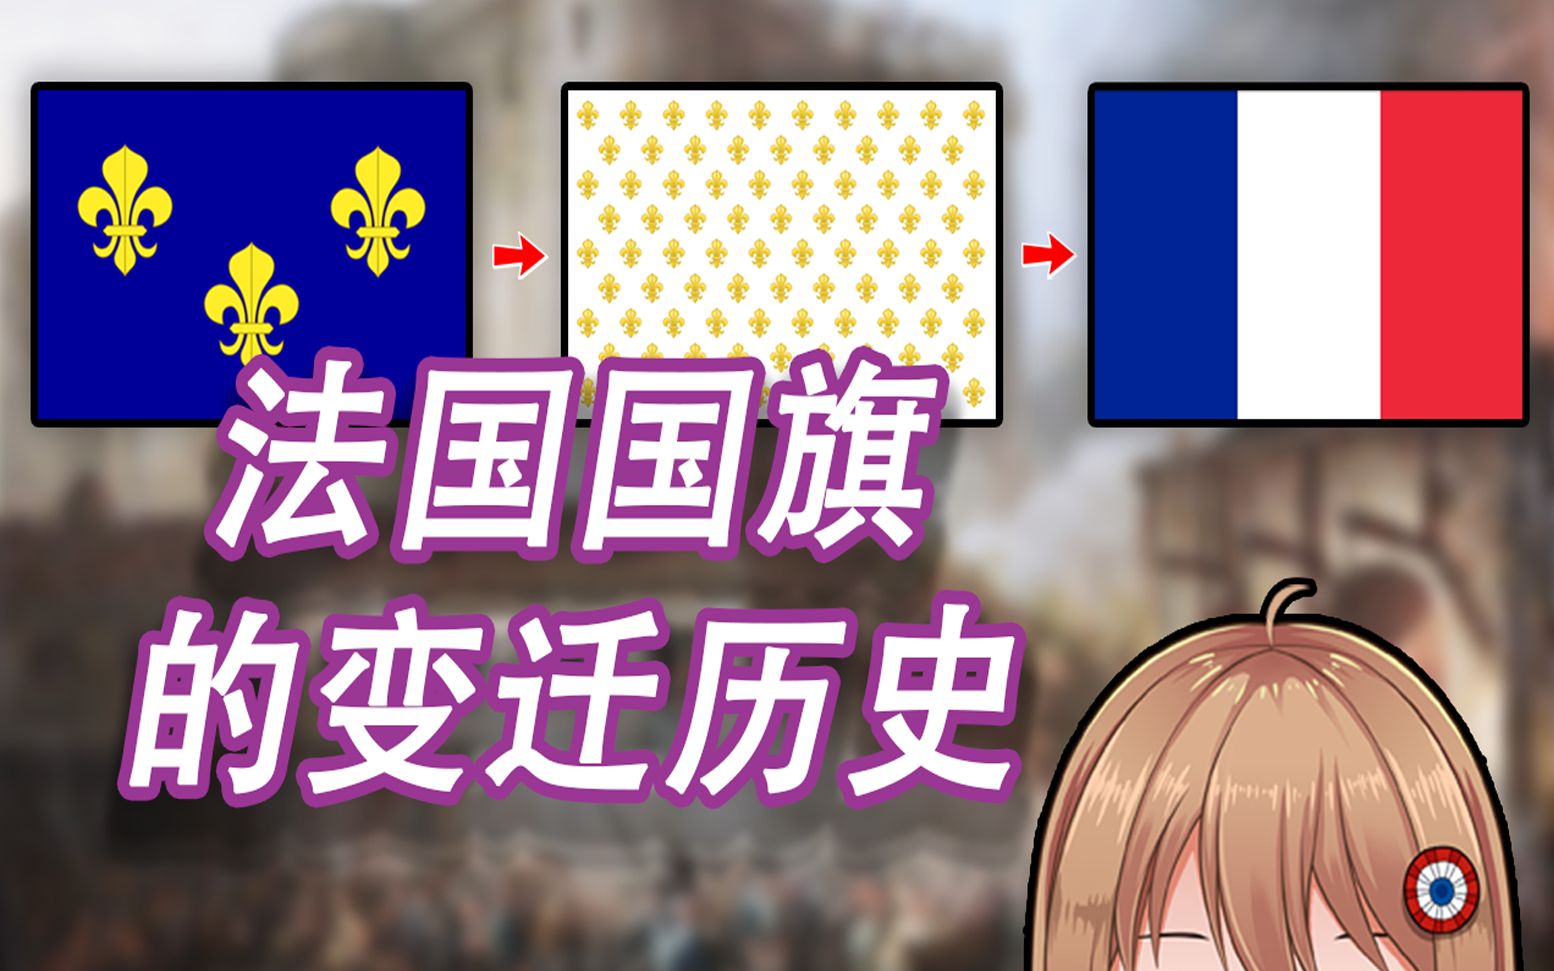 法国国旗演变史图片